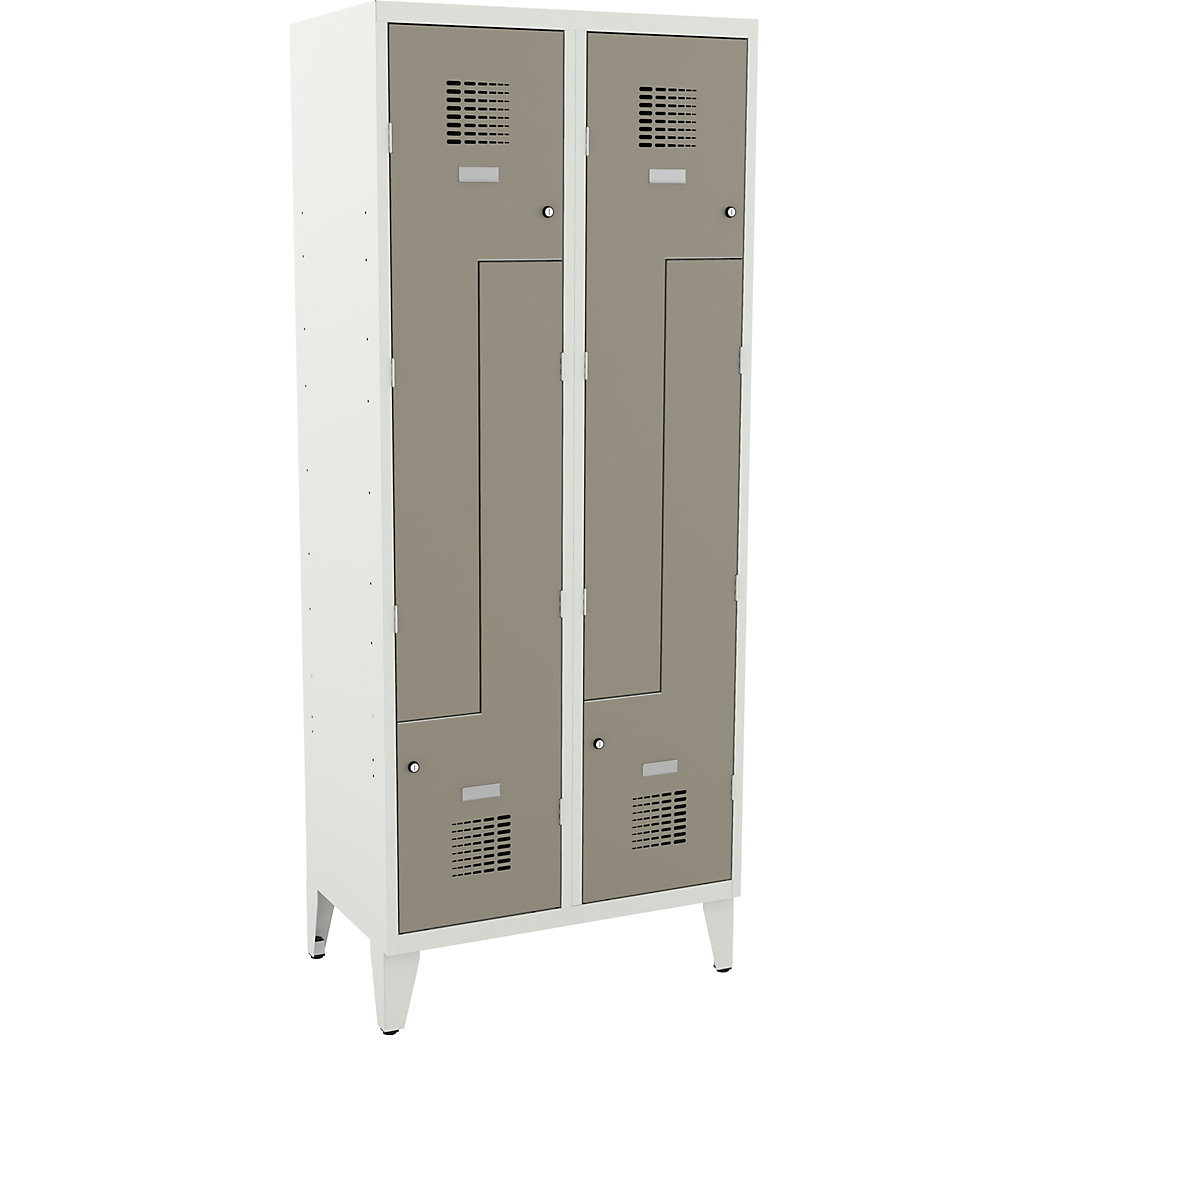 Z cloakroom locker, HxWxD 1940 x 800 x 500 mm, with feet, doors pebble grey-2